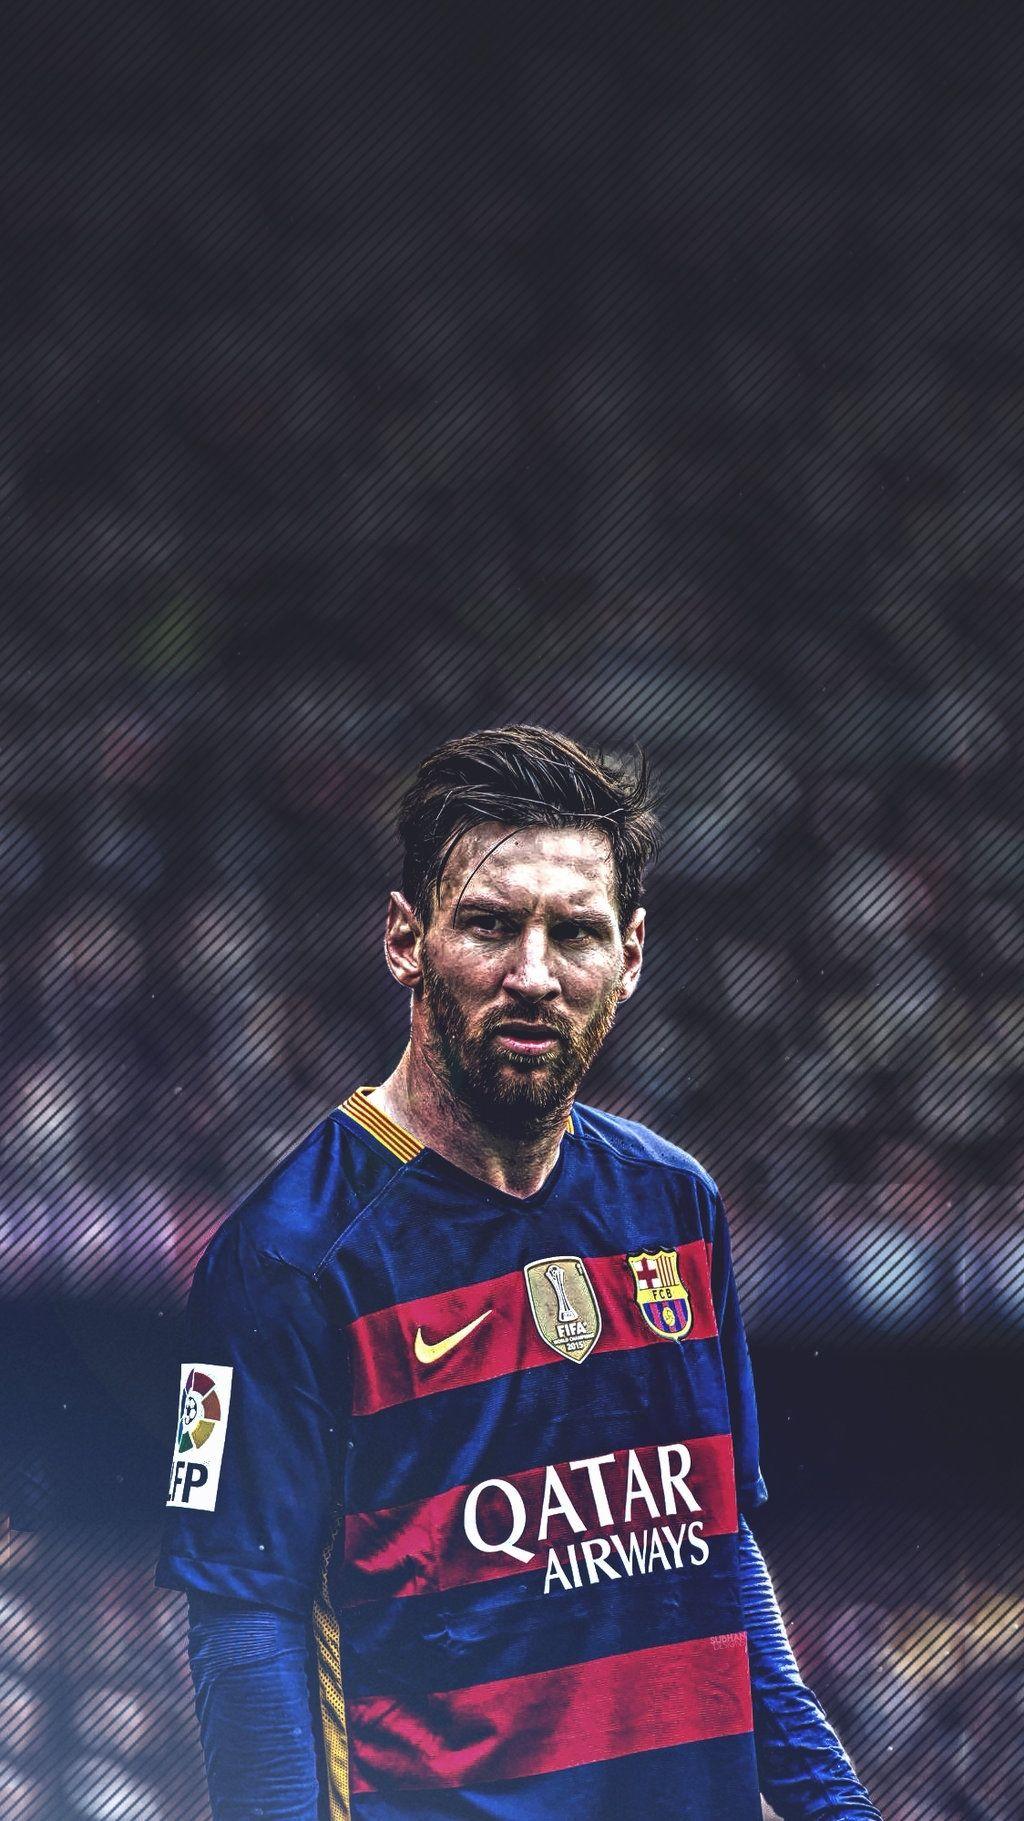 Messi - một huyền thoại của làng bóng đá thế giới, tài năng thiên bẩm và những kỉ lục vô tiền khoáng hậu này luôn khiến người hâm mộ không thể rời mắt. Đừng bỏ lỡ cơ hội chiêm ngưỡng những khoảnh khắc ấn tượng nhất của anh tại đấu trường bóng đá hạng A!